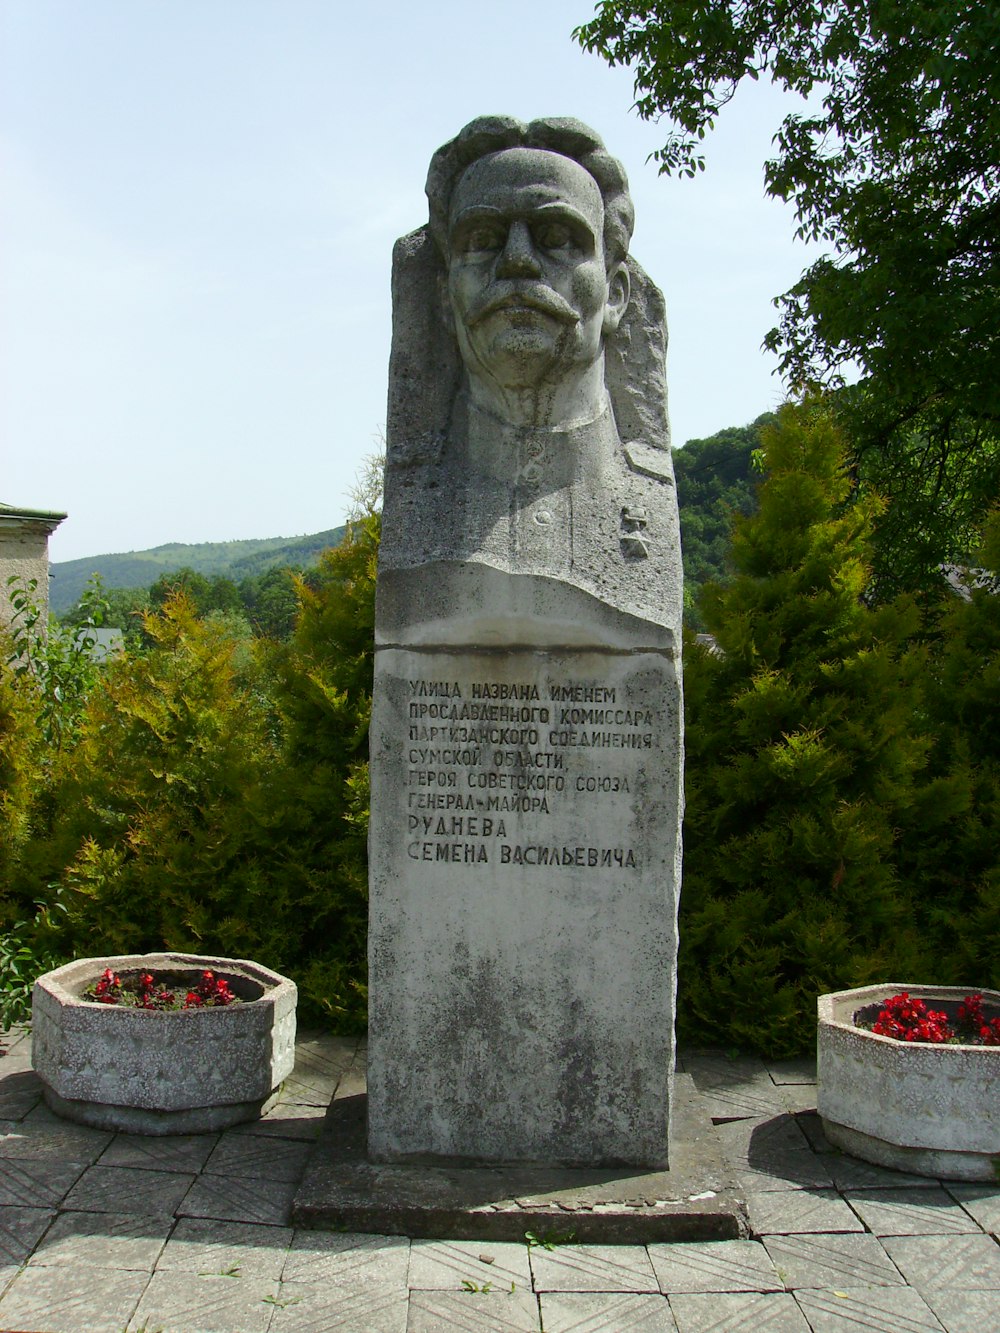 Una estatua de un hombre con barba en un parque